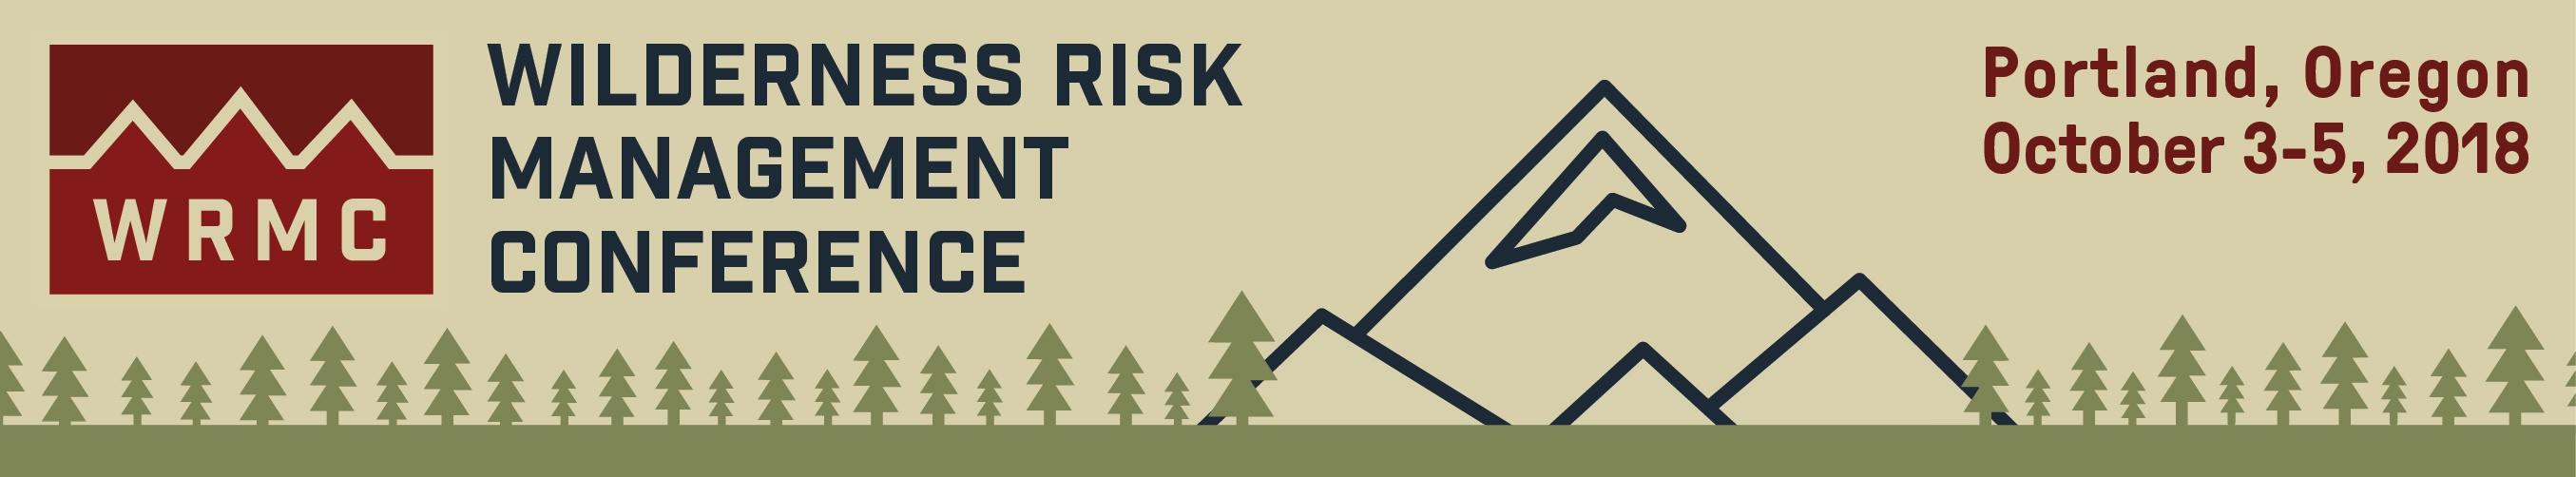 Wilderness Risk Management Conference 2018 Banner